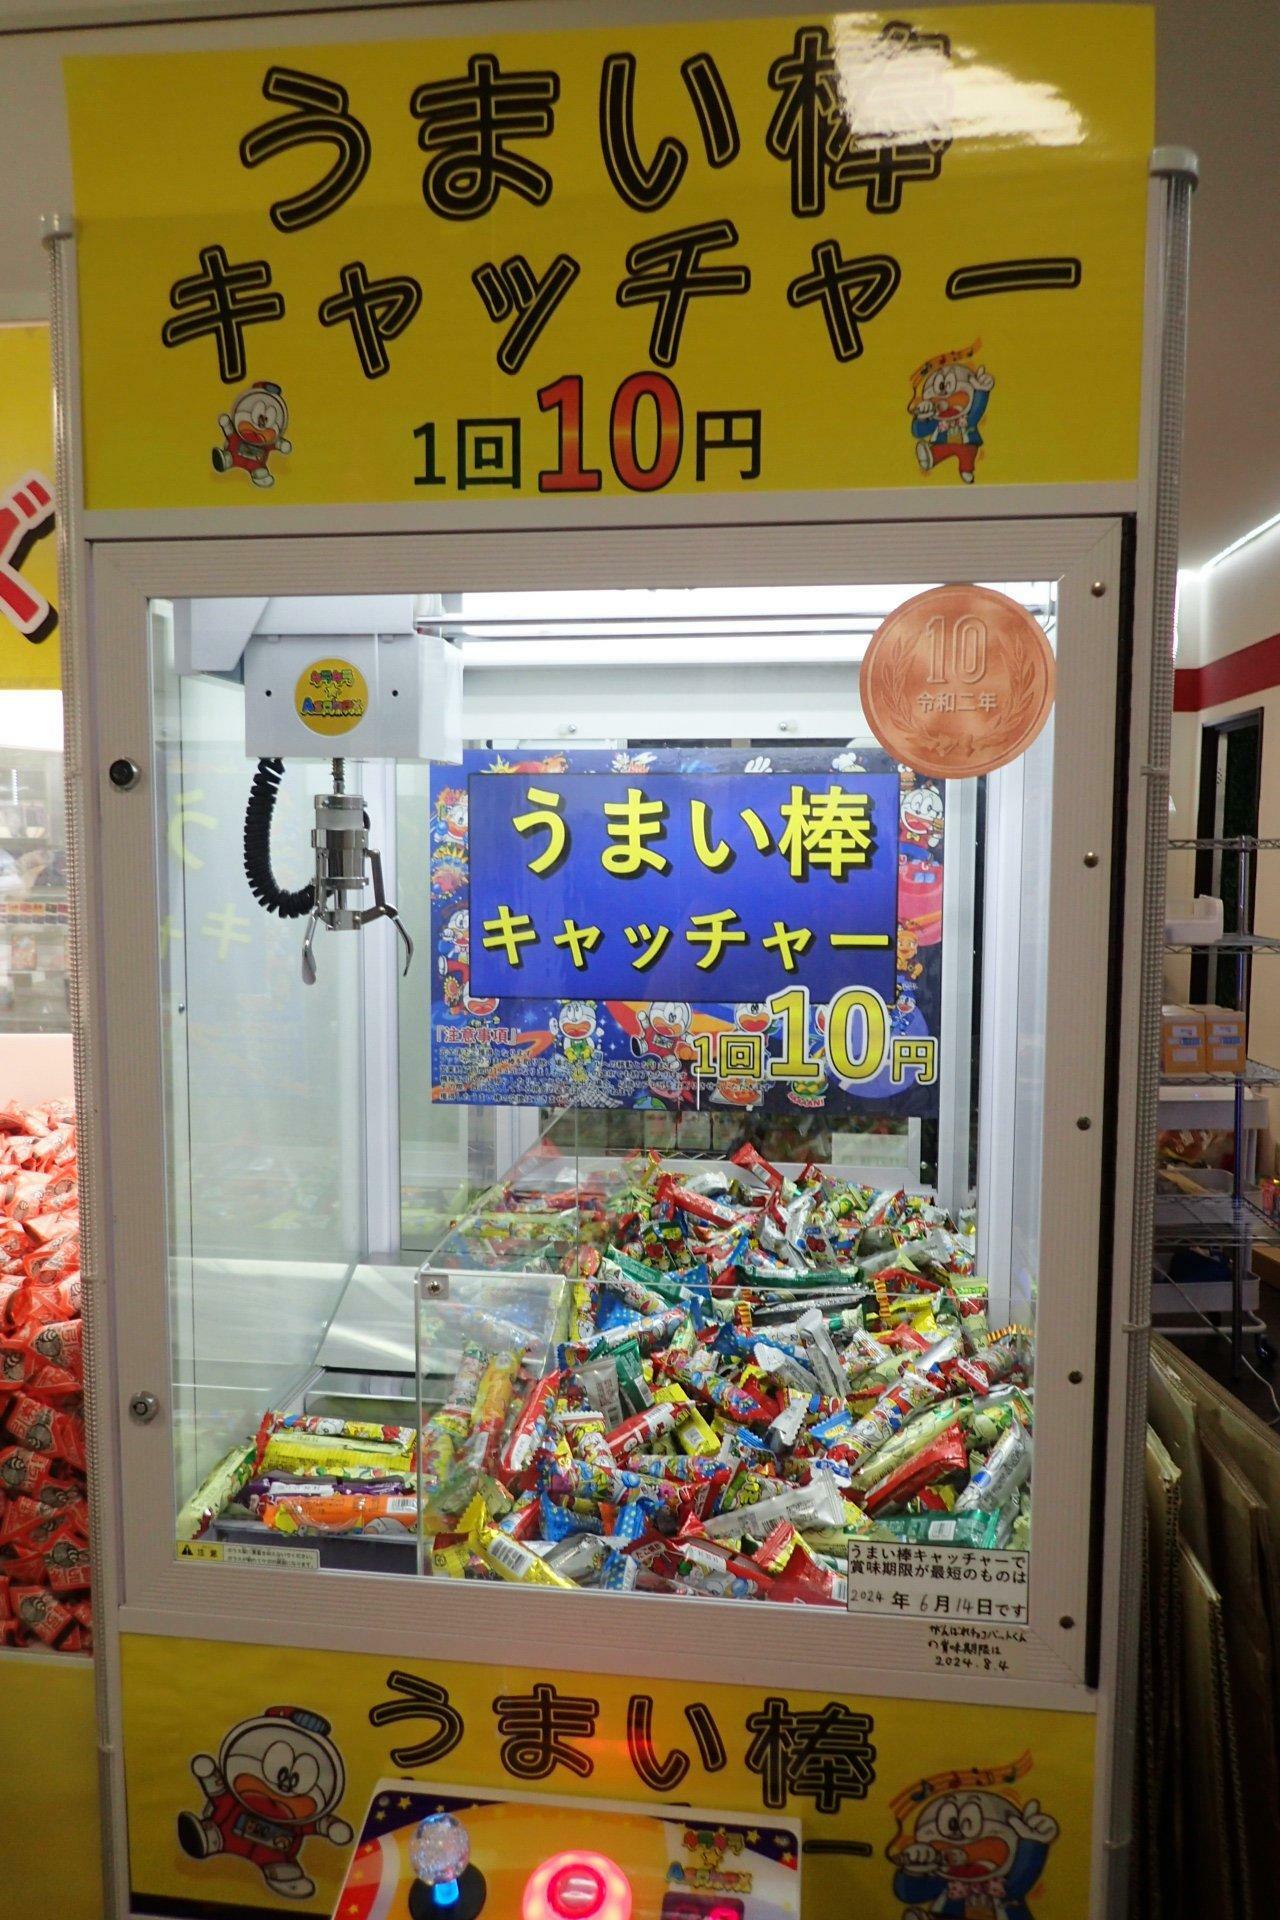 １回１０円で遊べる、うまい棒キャッチャー